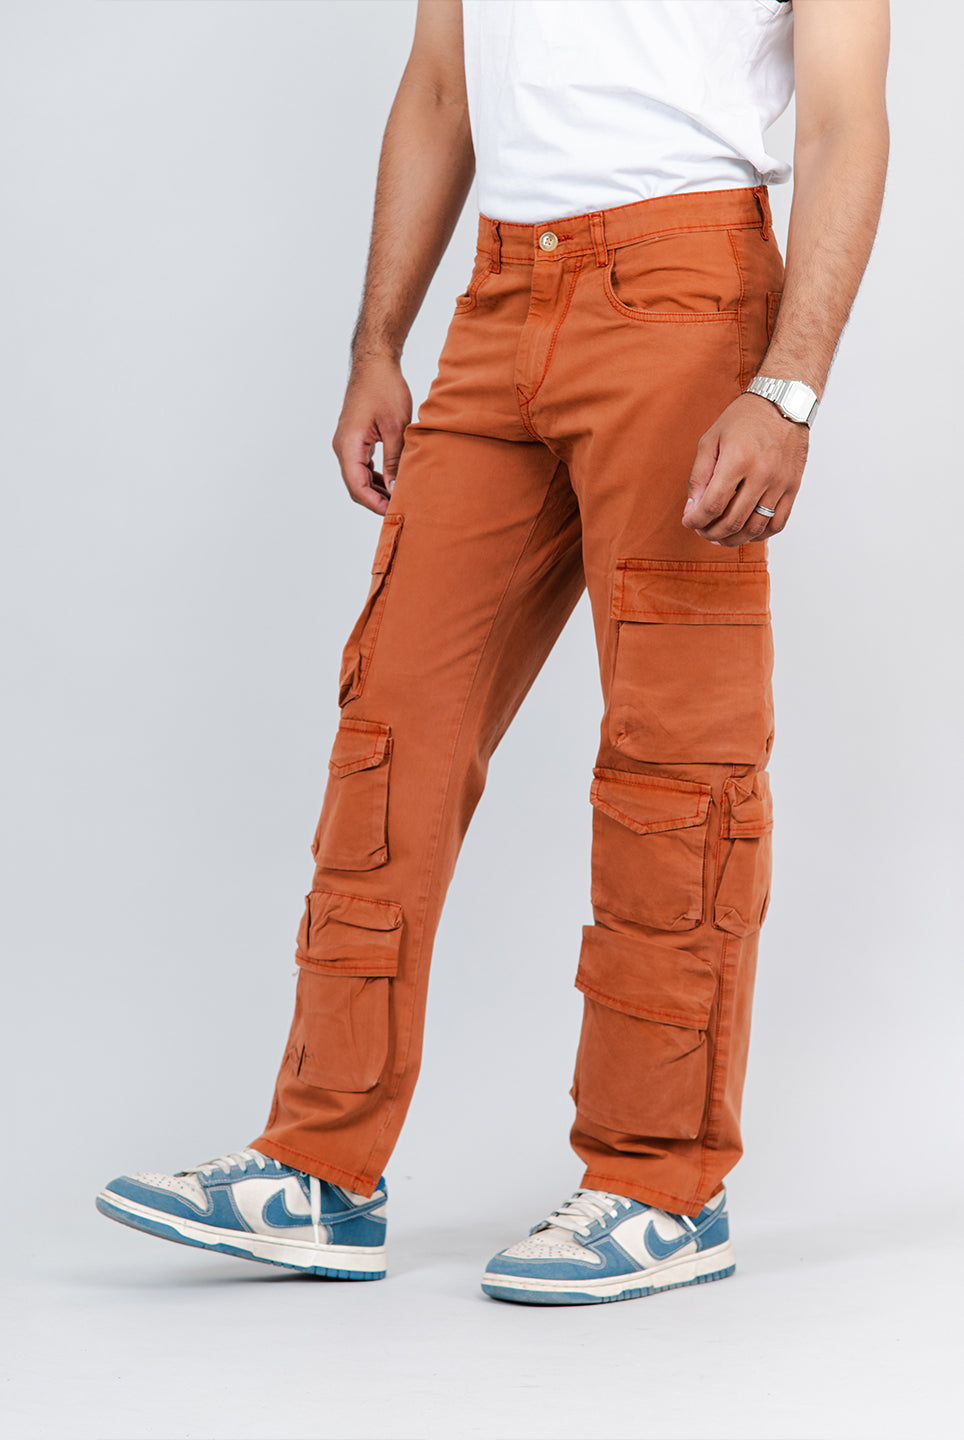 Cargo Pants For Men Online - Tistabene - Tistabene